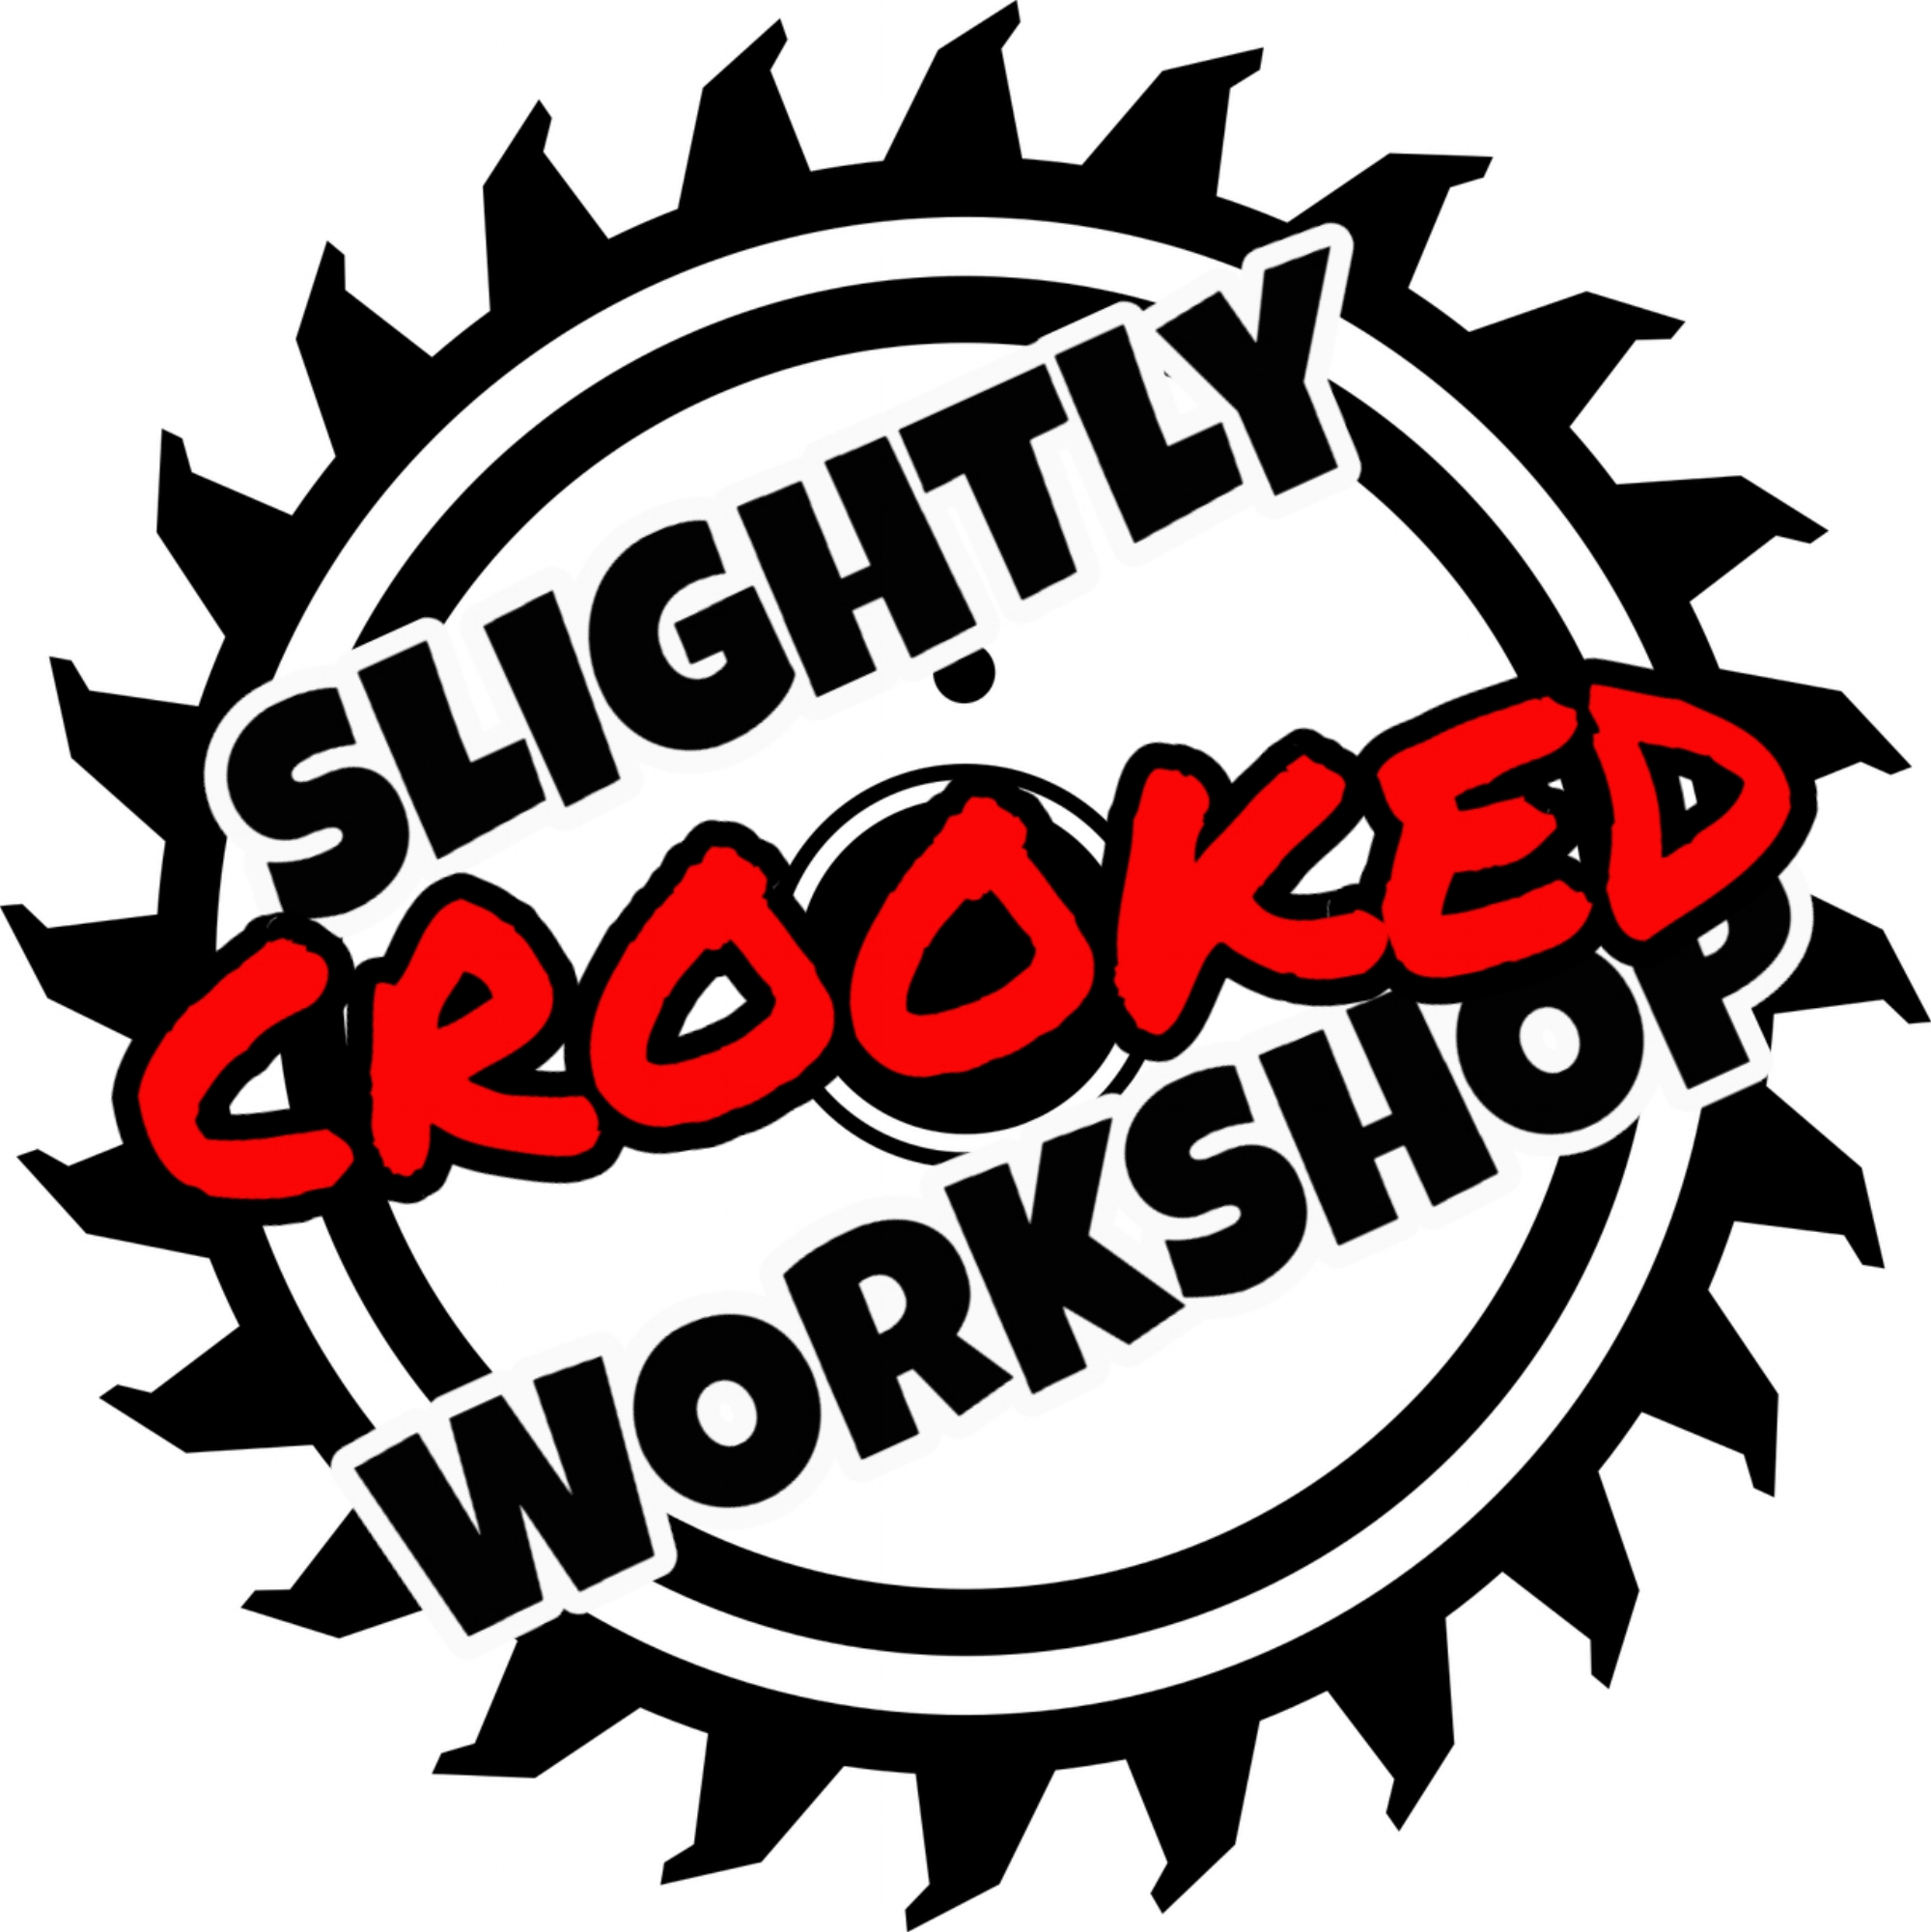 Slightly Crooked Workshop